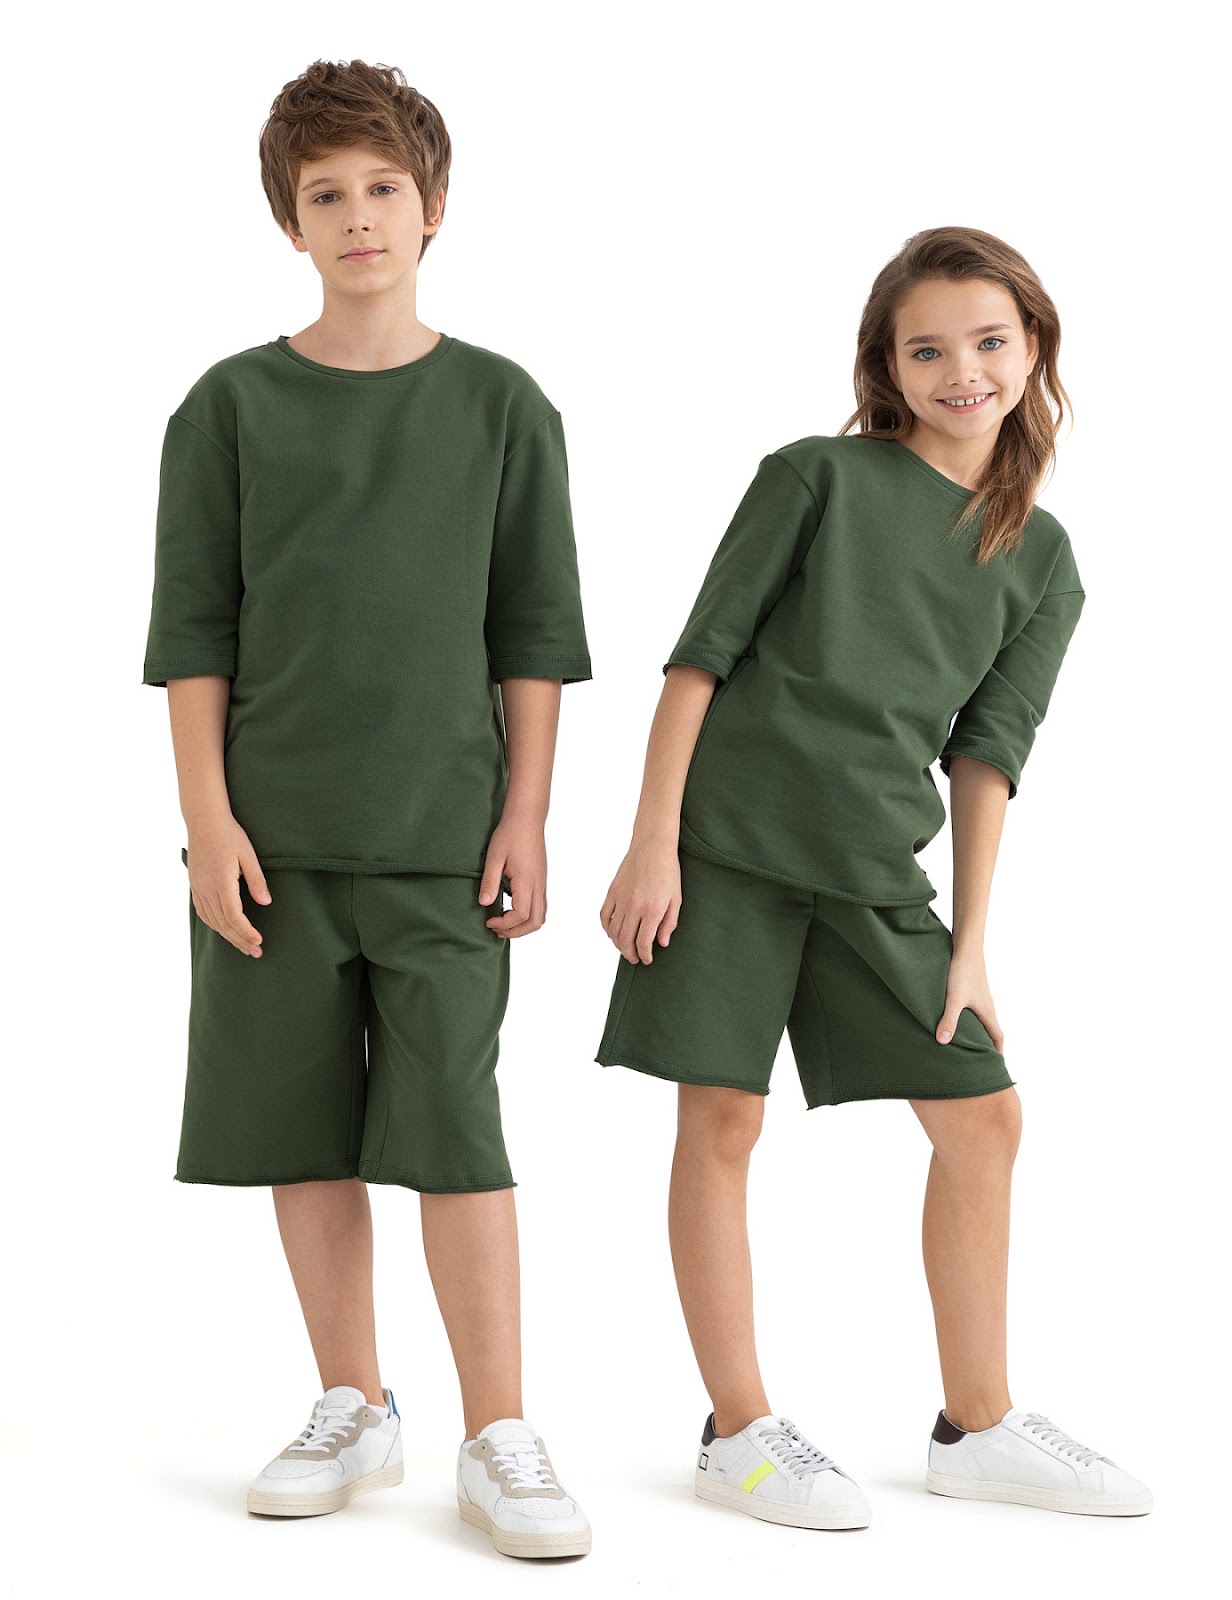 мальчик и девочка в зеленых шортах и майках